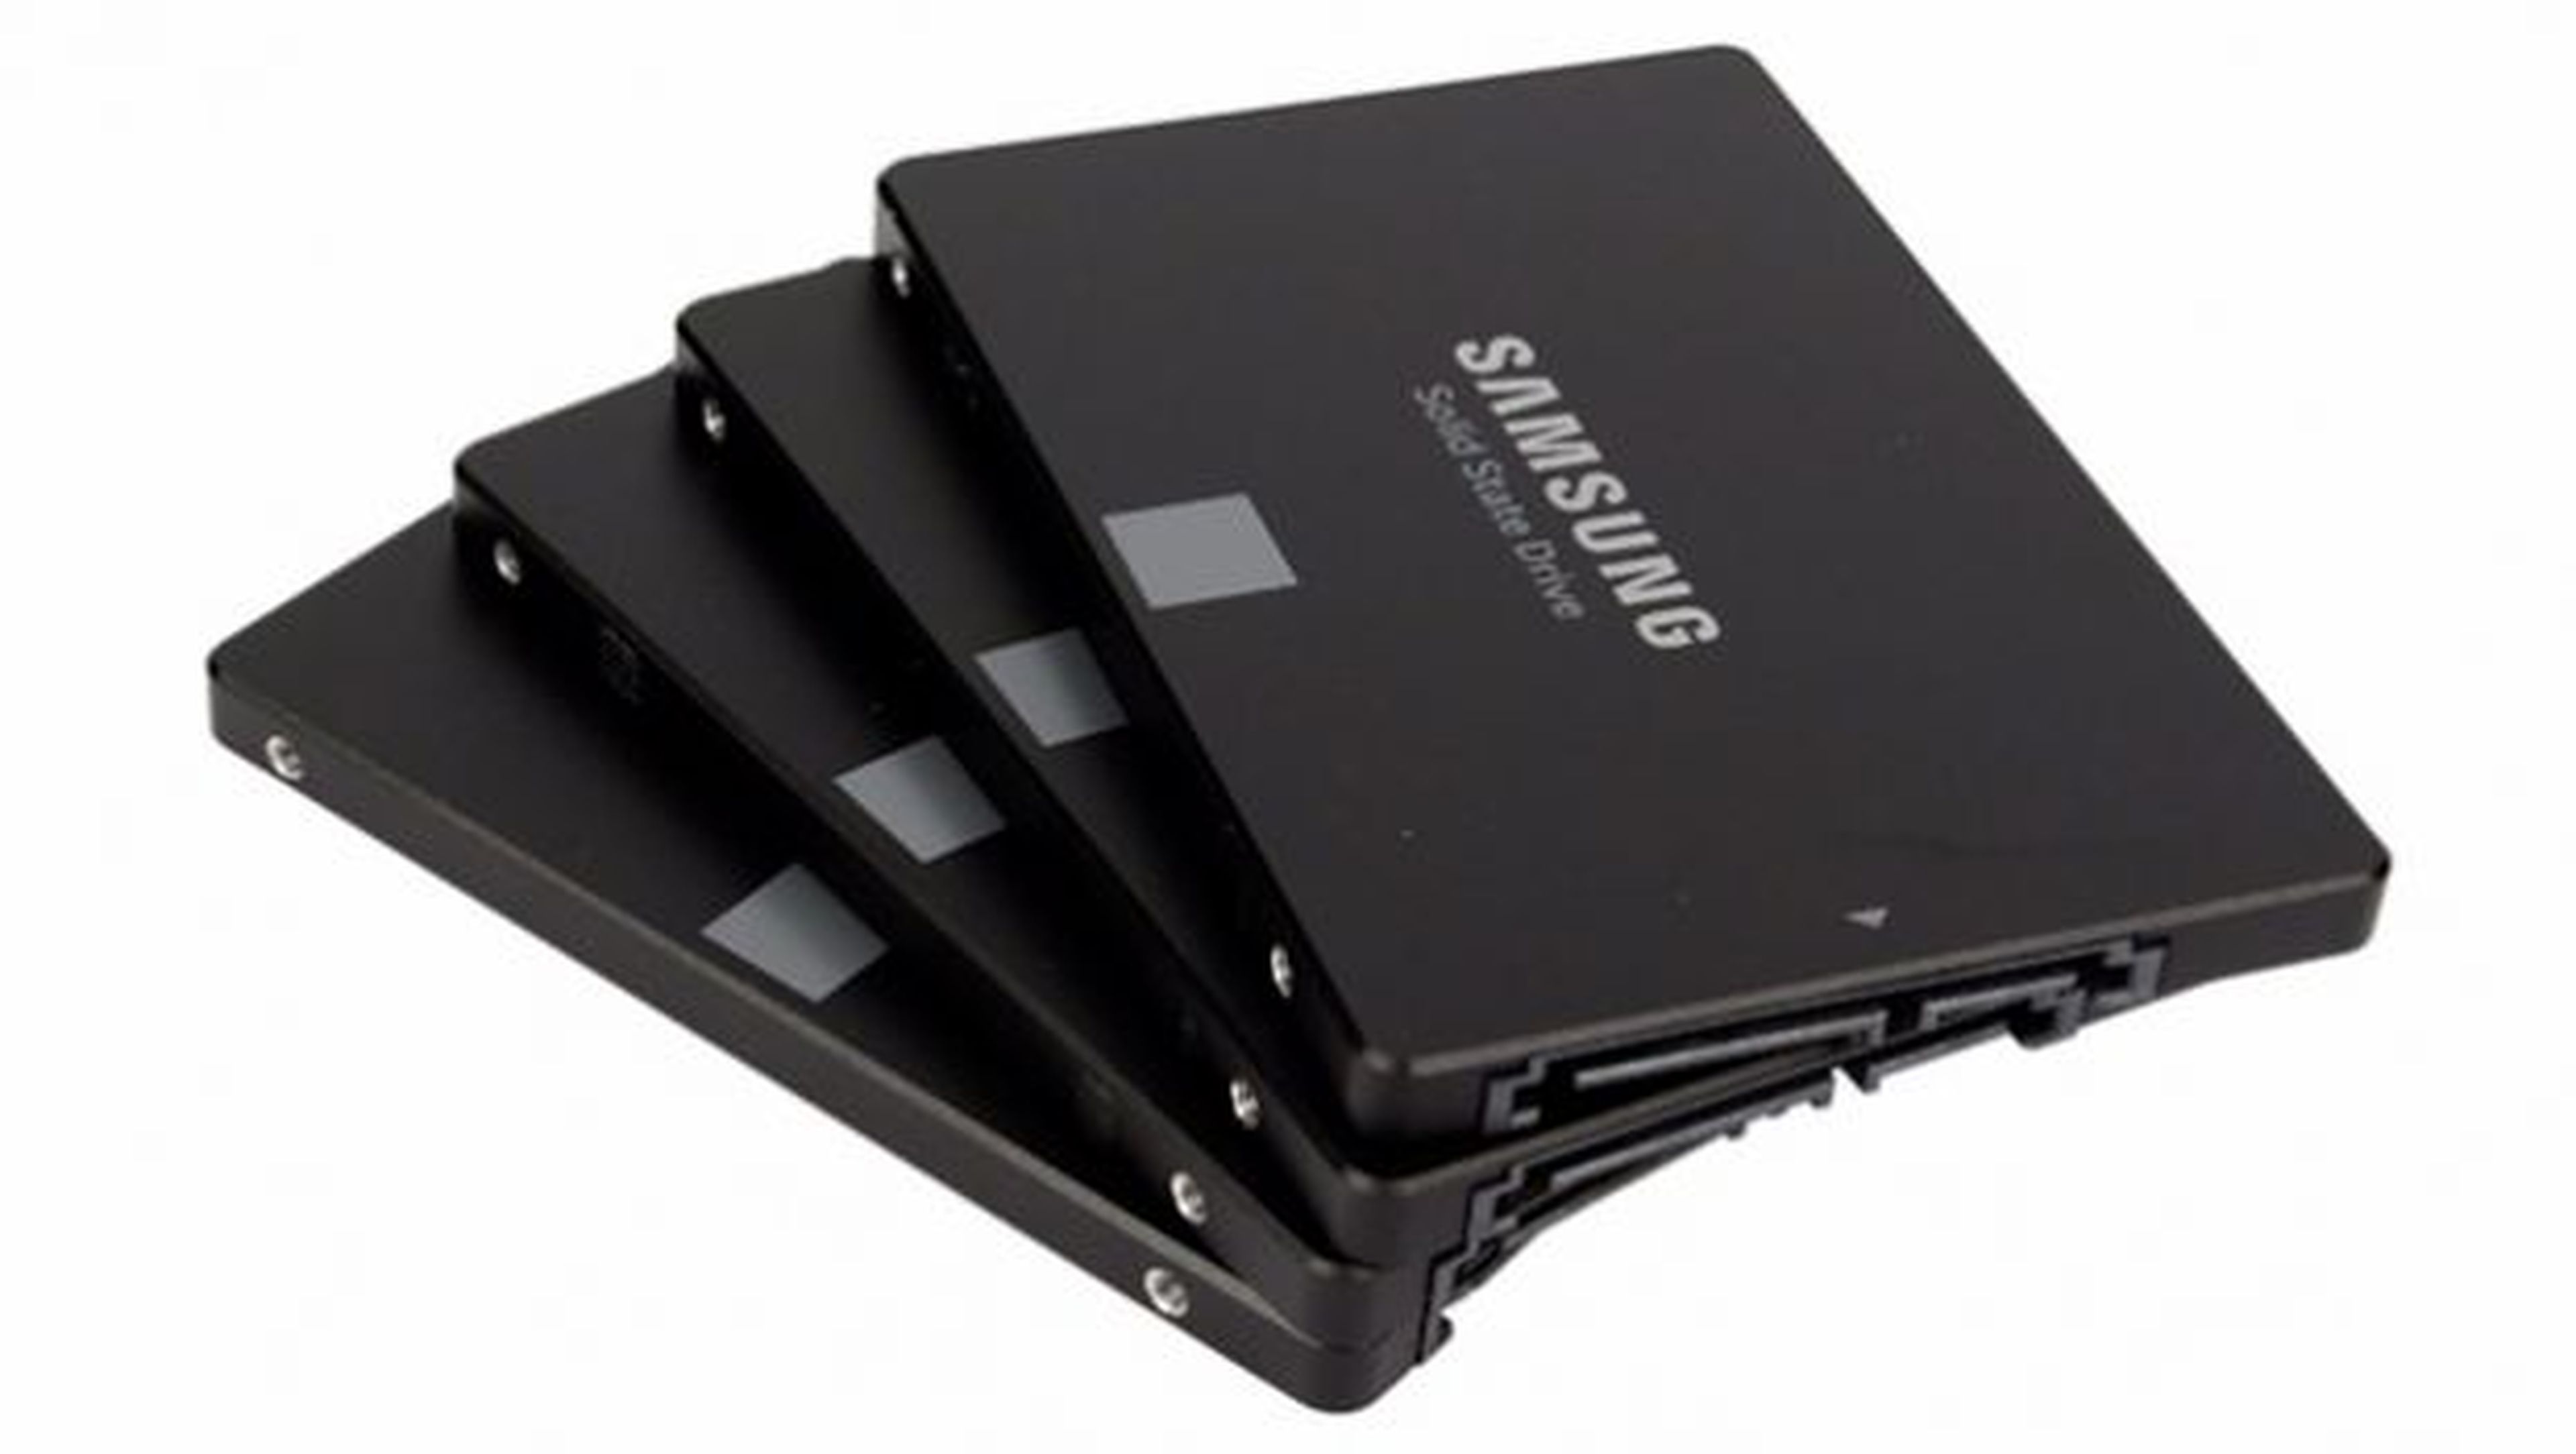 Existe poca diferencia de rendimiento entre los SSD de la misma categoría.